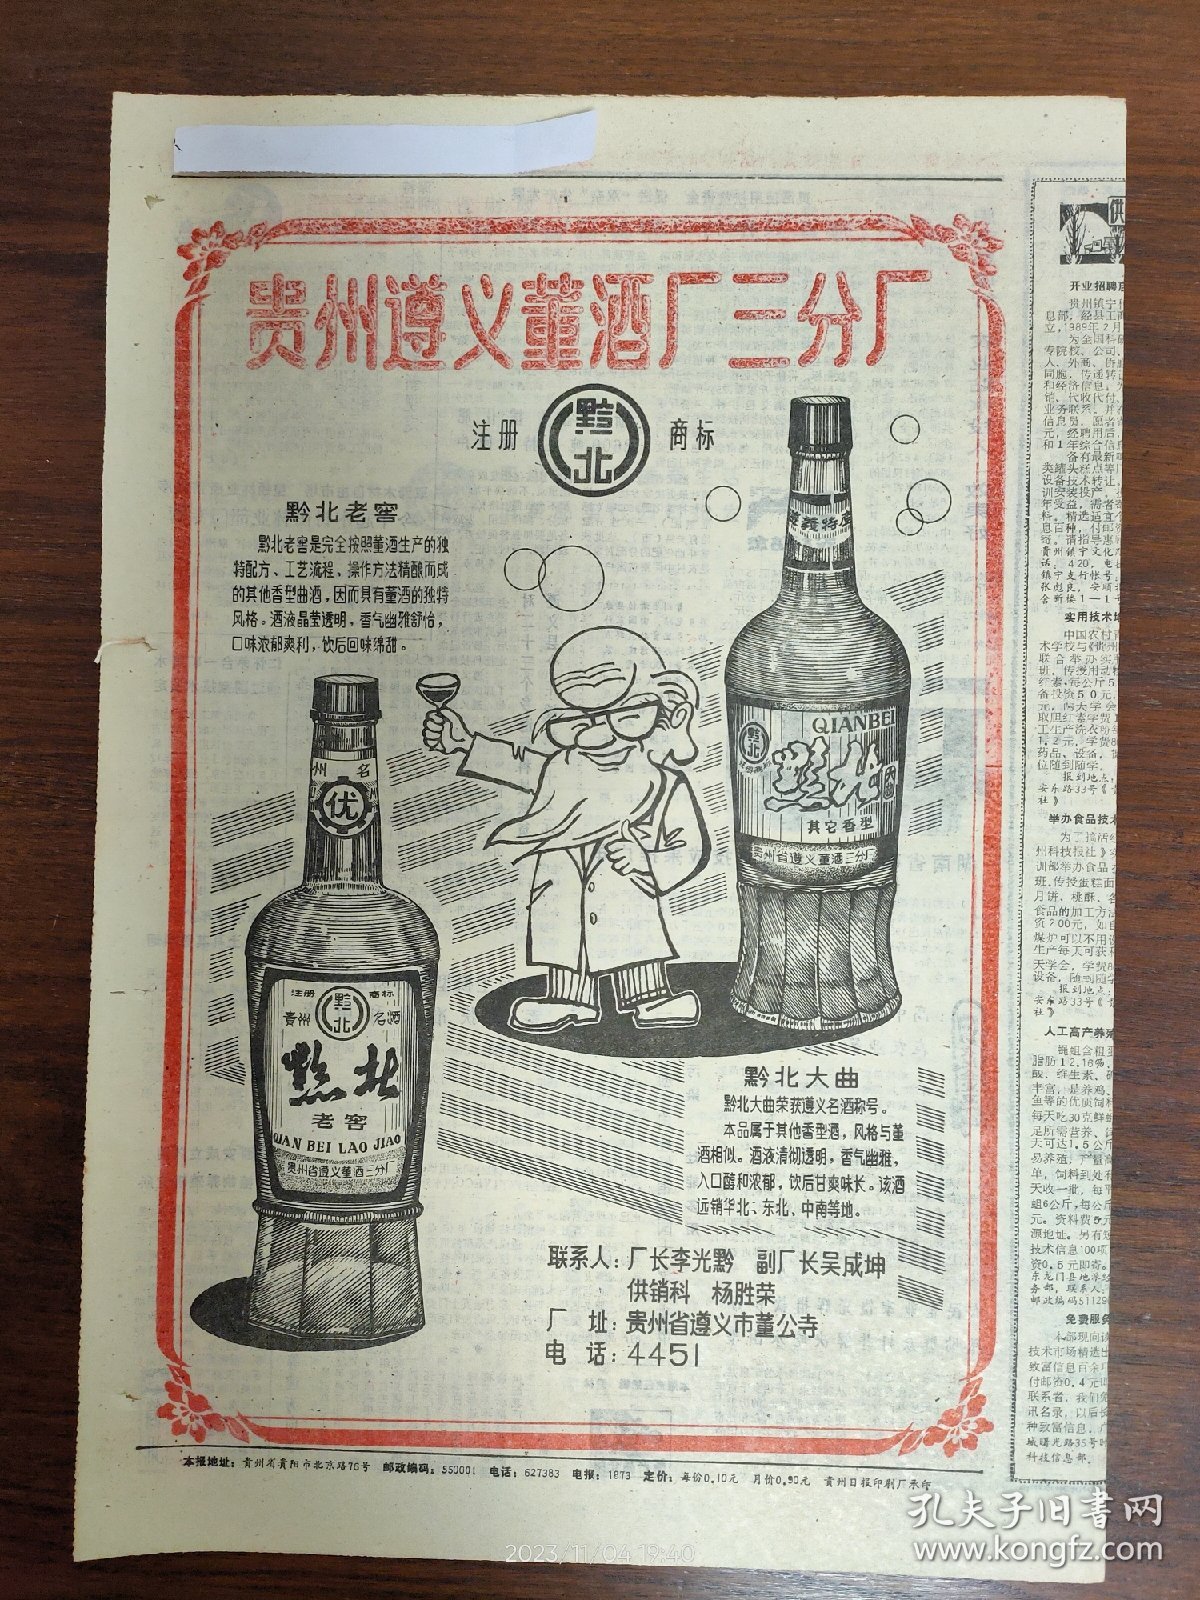 酒文化系列-贵州遵义董酒厂三分厂:黔北老窖、黔北大曲。